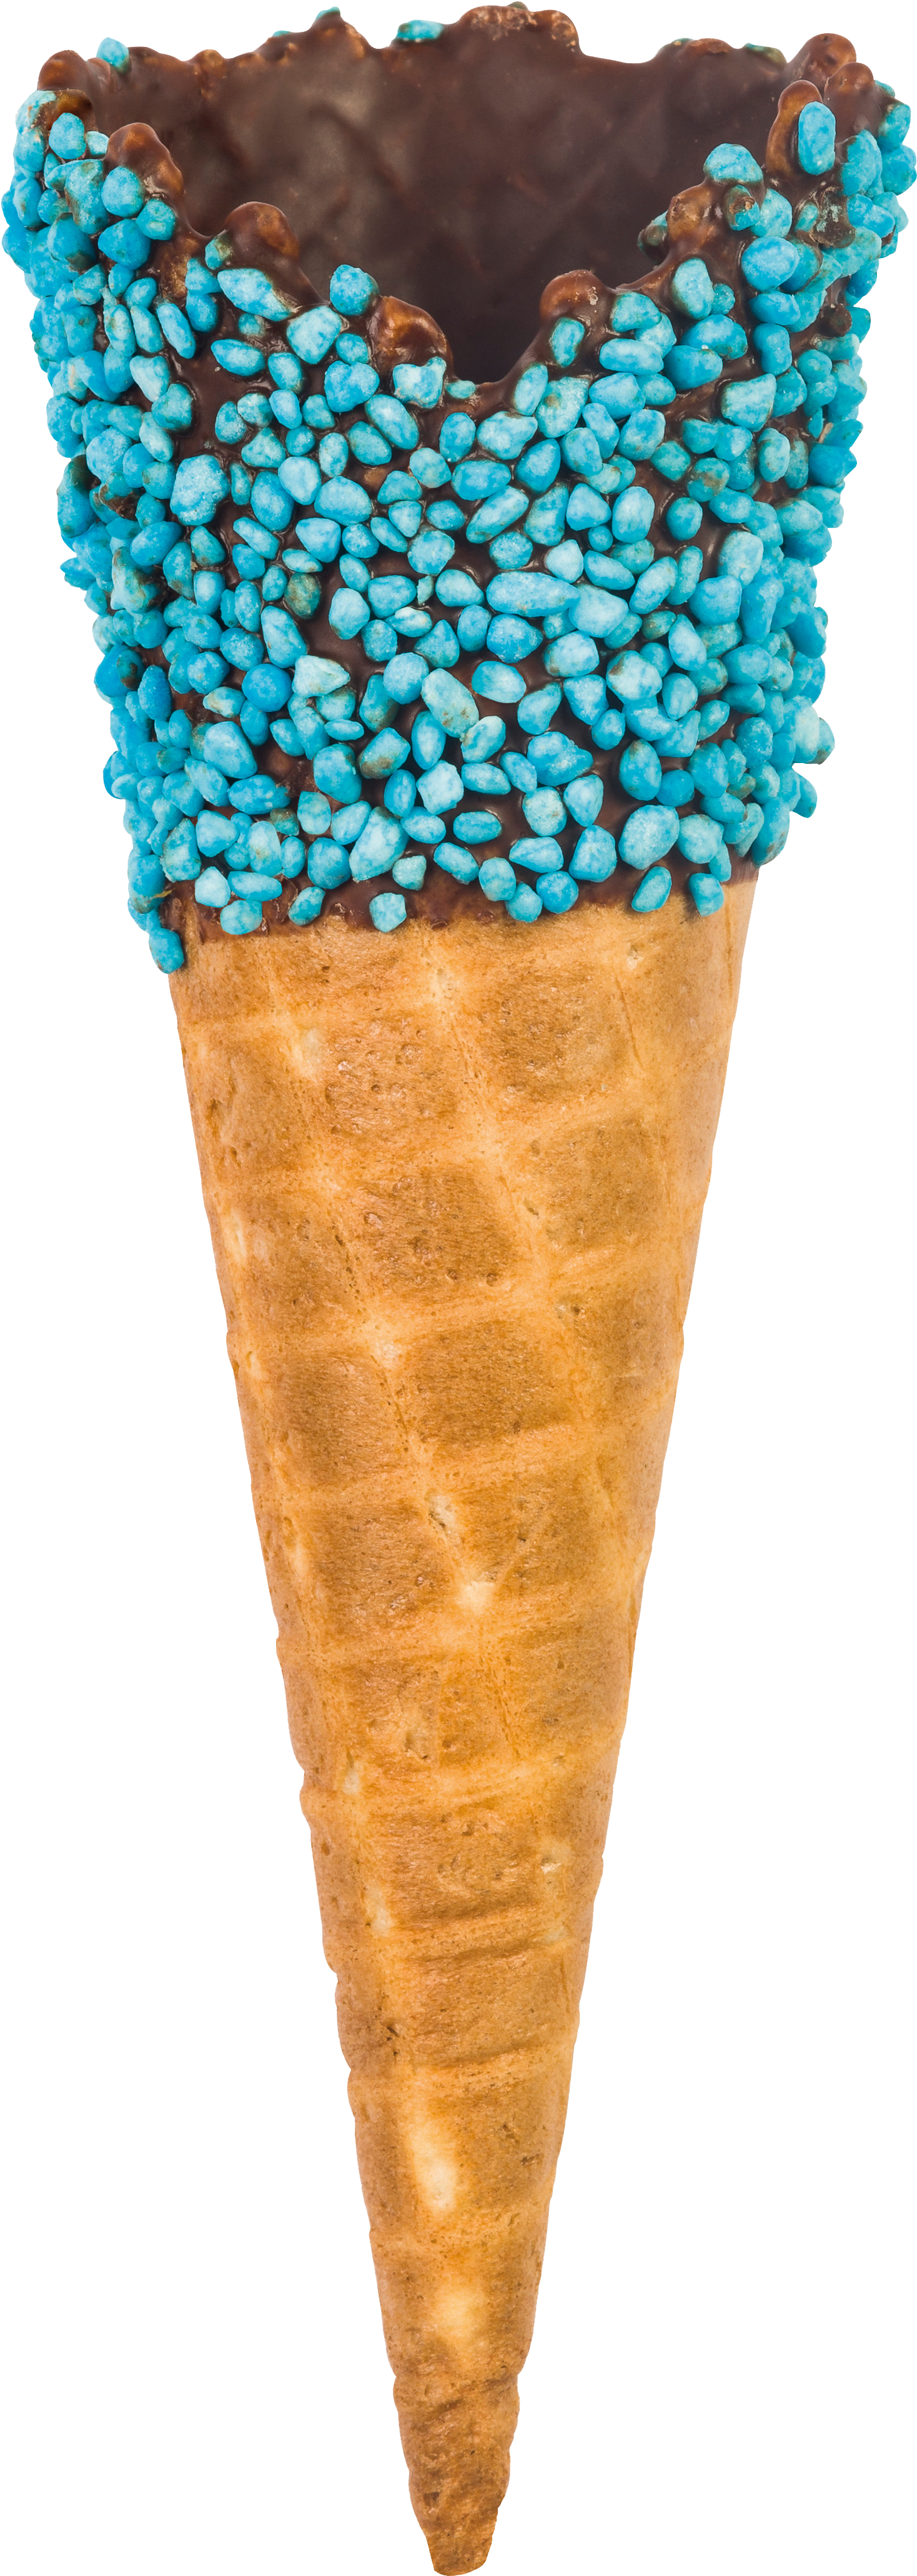 Ice Cream Flavour - Ice Cream Cone (3665x5497)